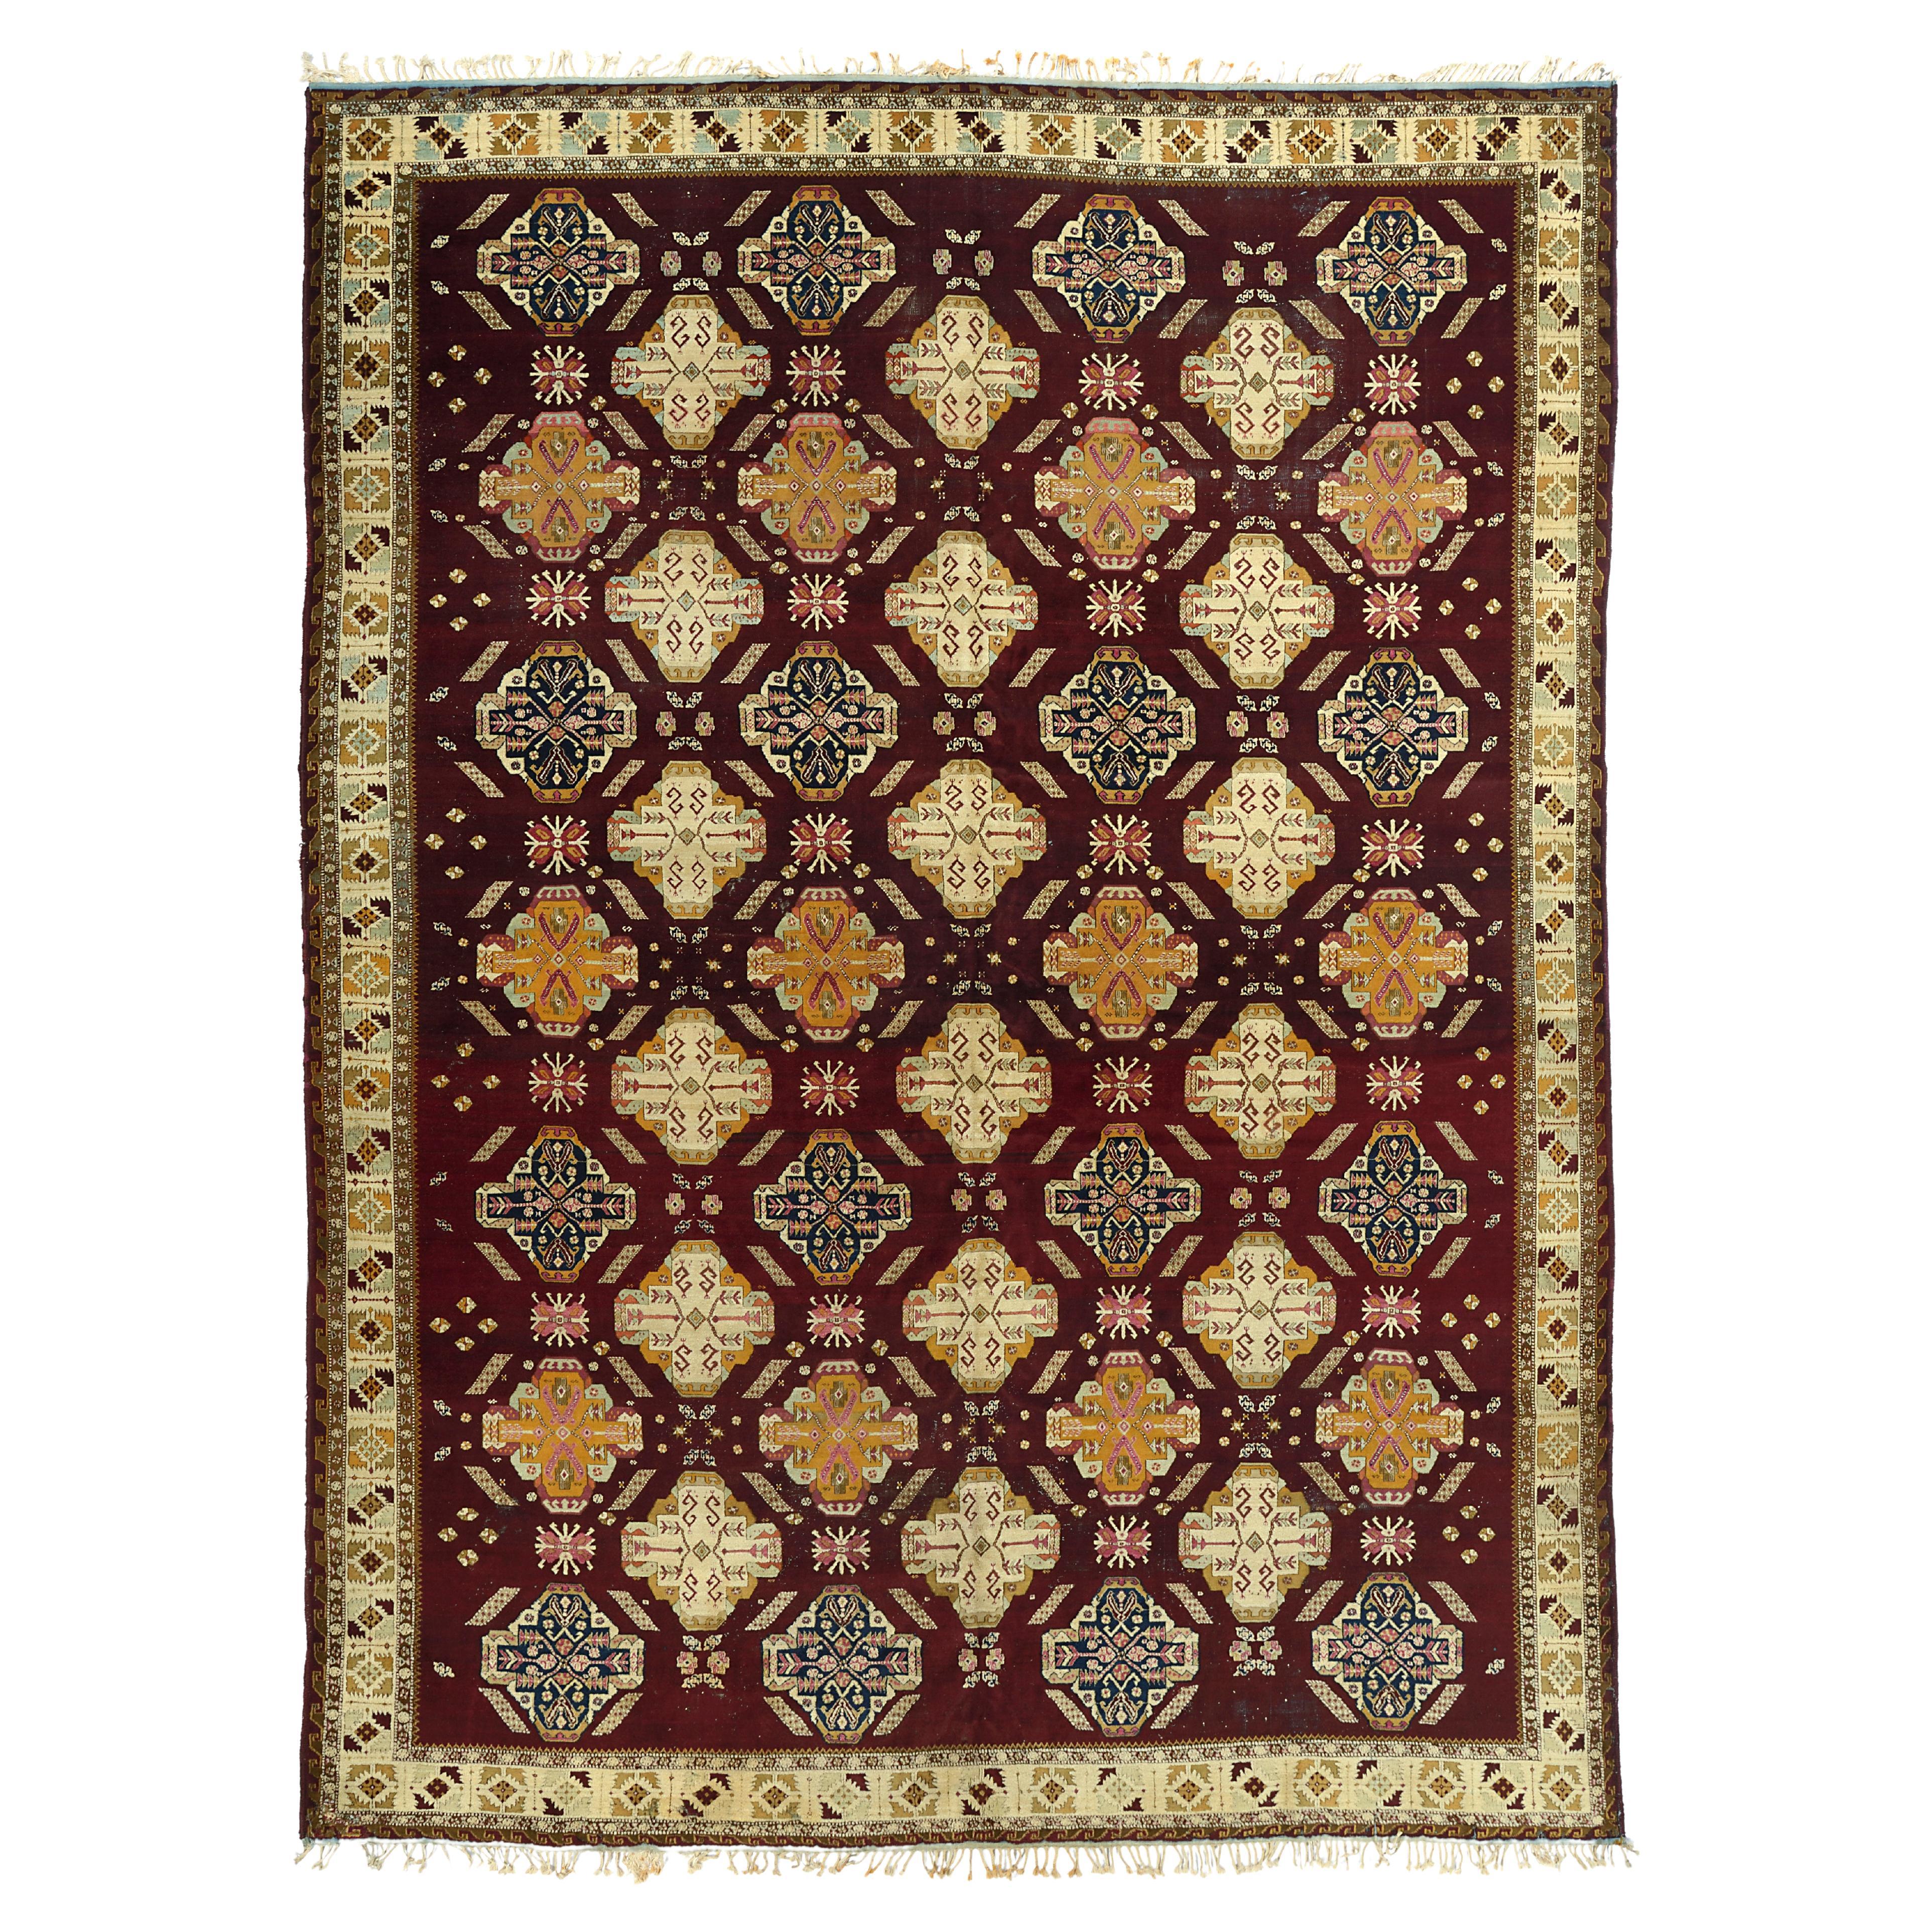 Unusual Antique Agra Carpet